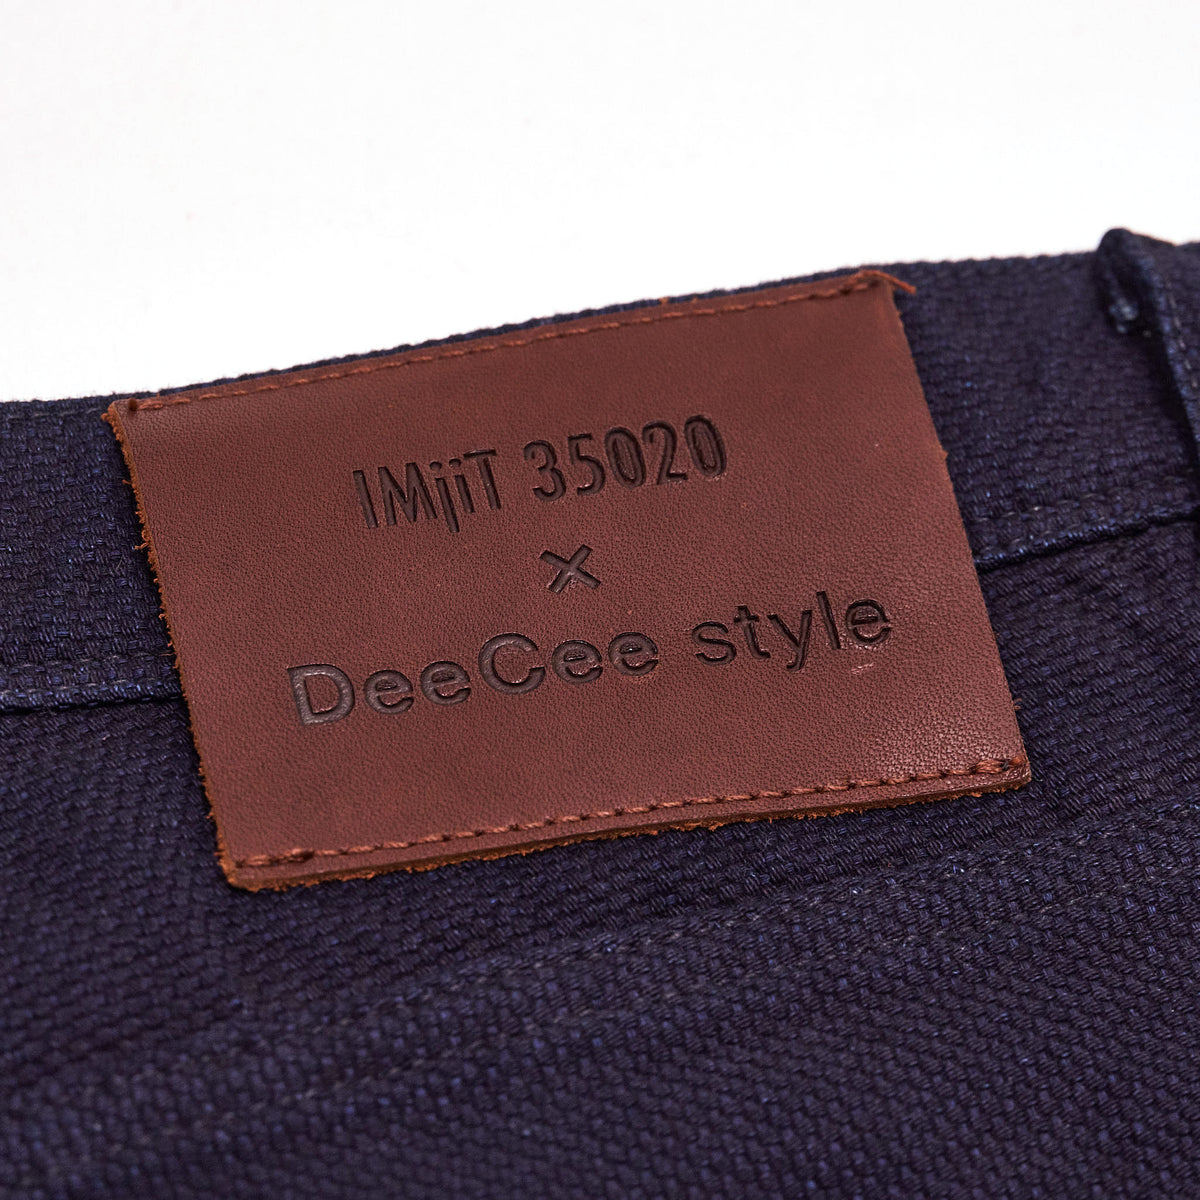 IMjiT 35020 x DeeCee style Anniversary Sashiko Jeans